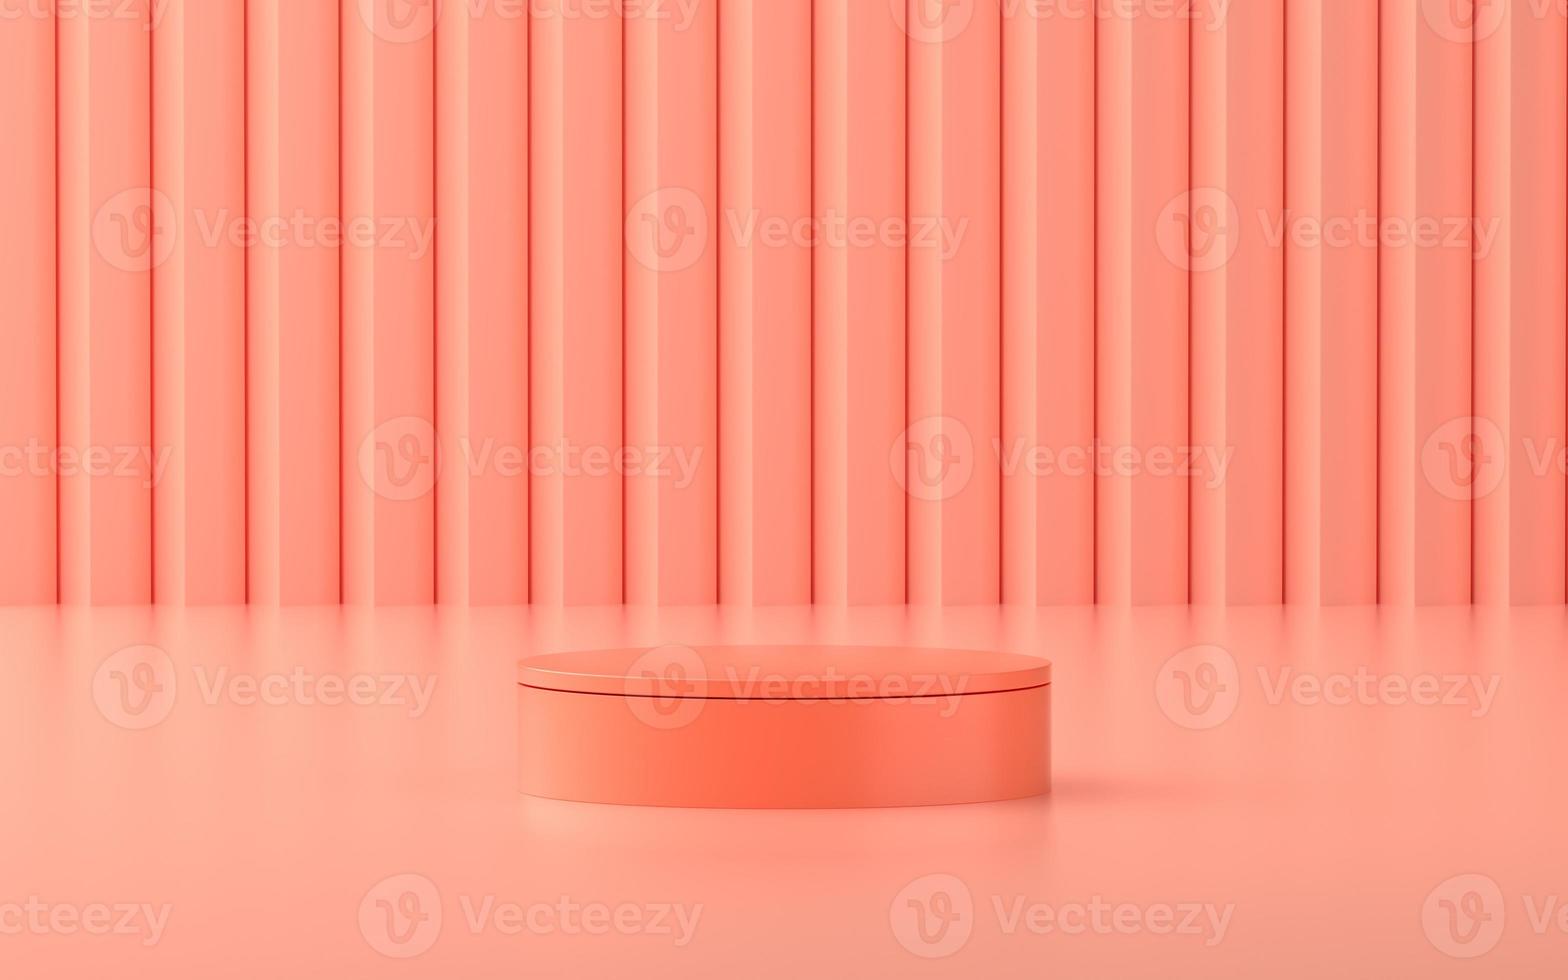 Escenario del producto con escena rosa para promoción o escaparate del producto. foto